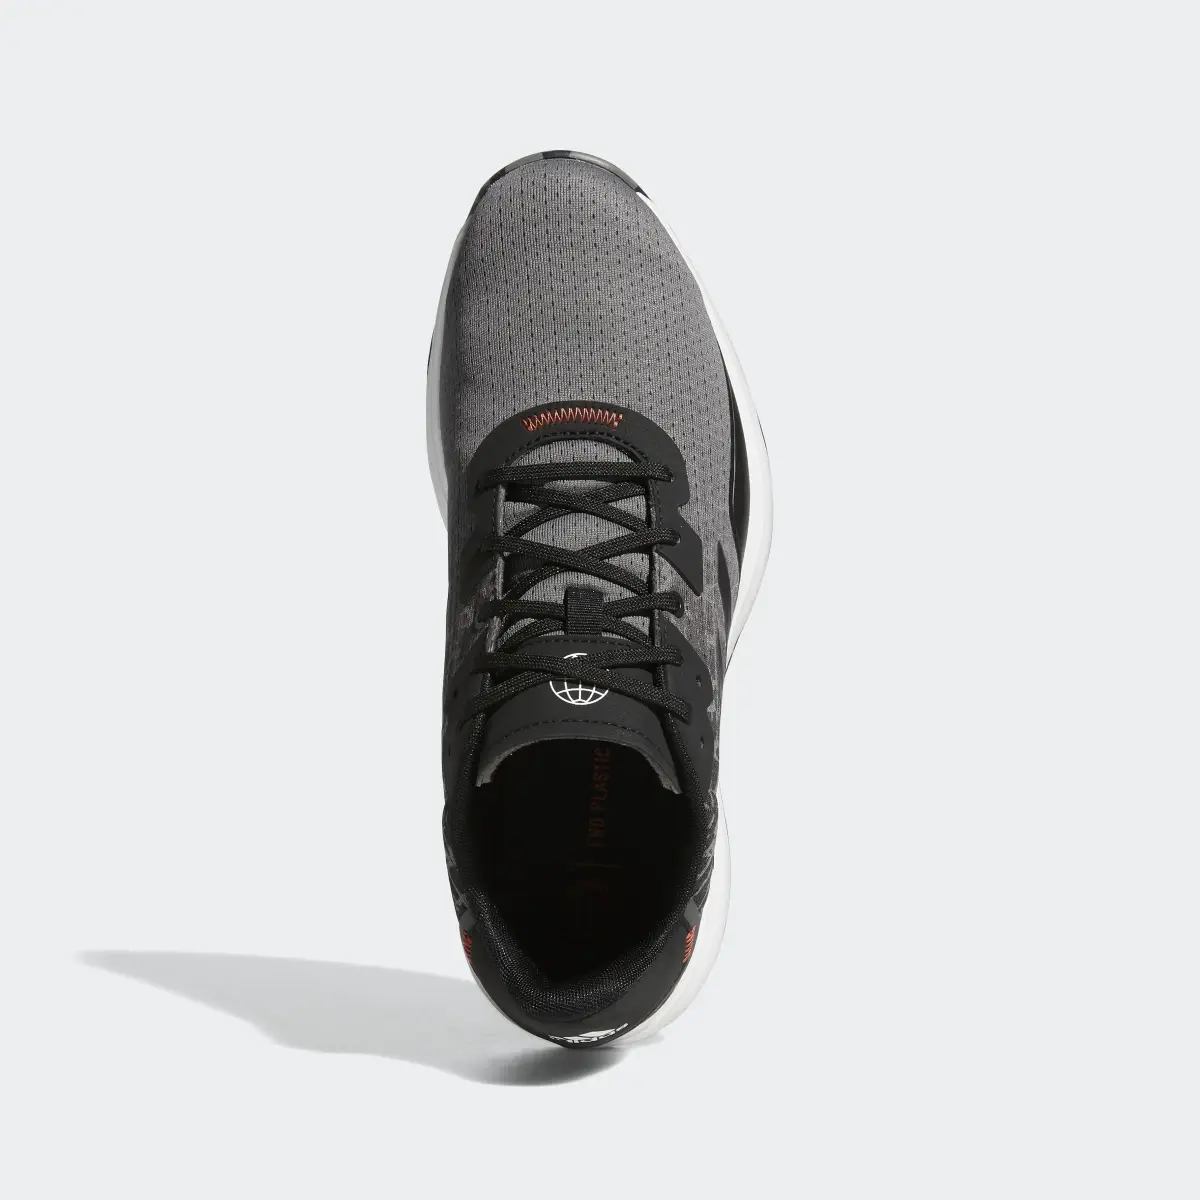 Adidas S2G Spikeless Golf Shoes. 3